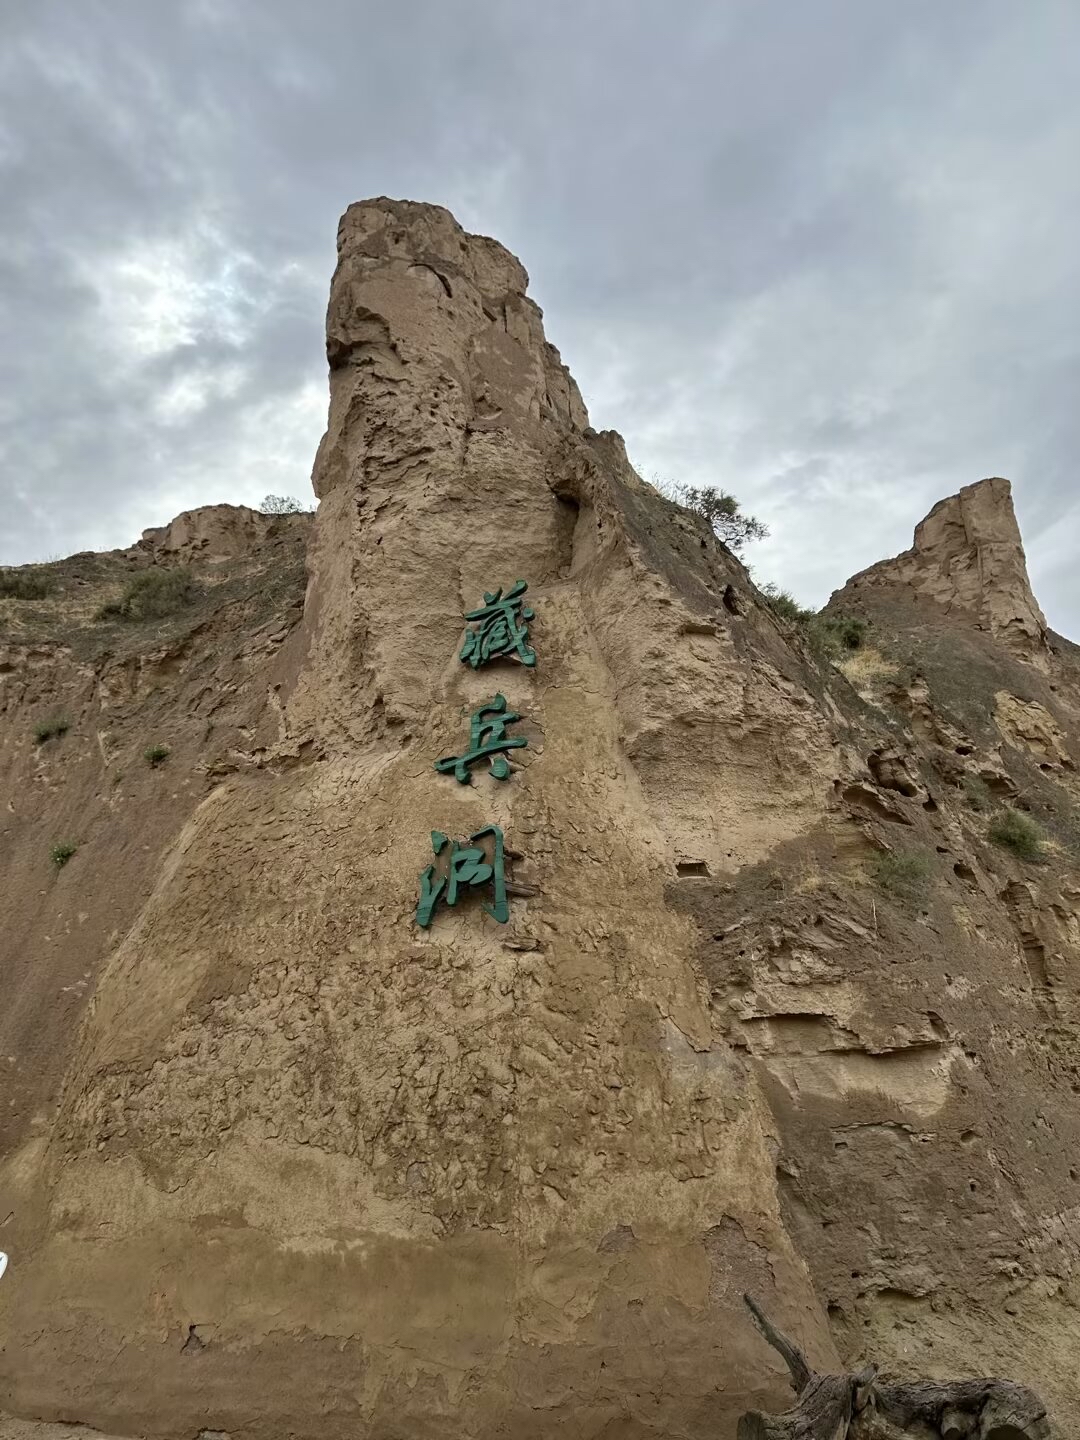 藏兵洞 也就是字面上的意思 古时屯兵的地方 这里的洞穴非常之多 弯弯曲曲非常有趣 宁夏的景区就是透着